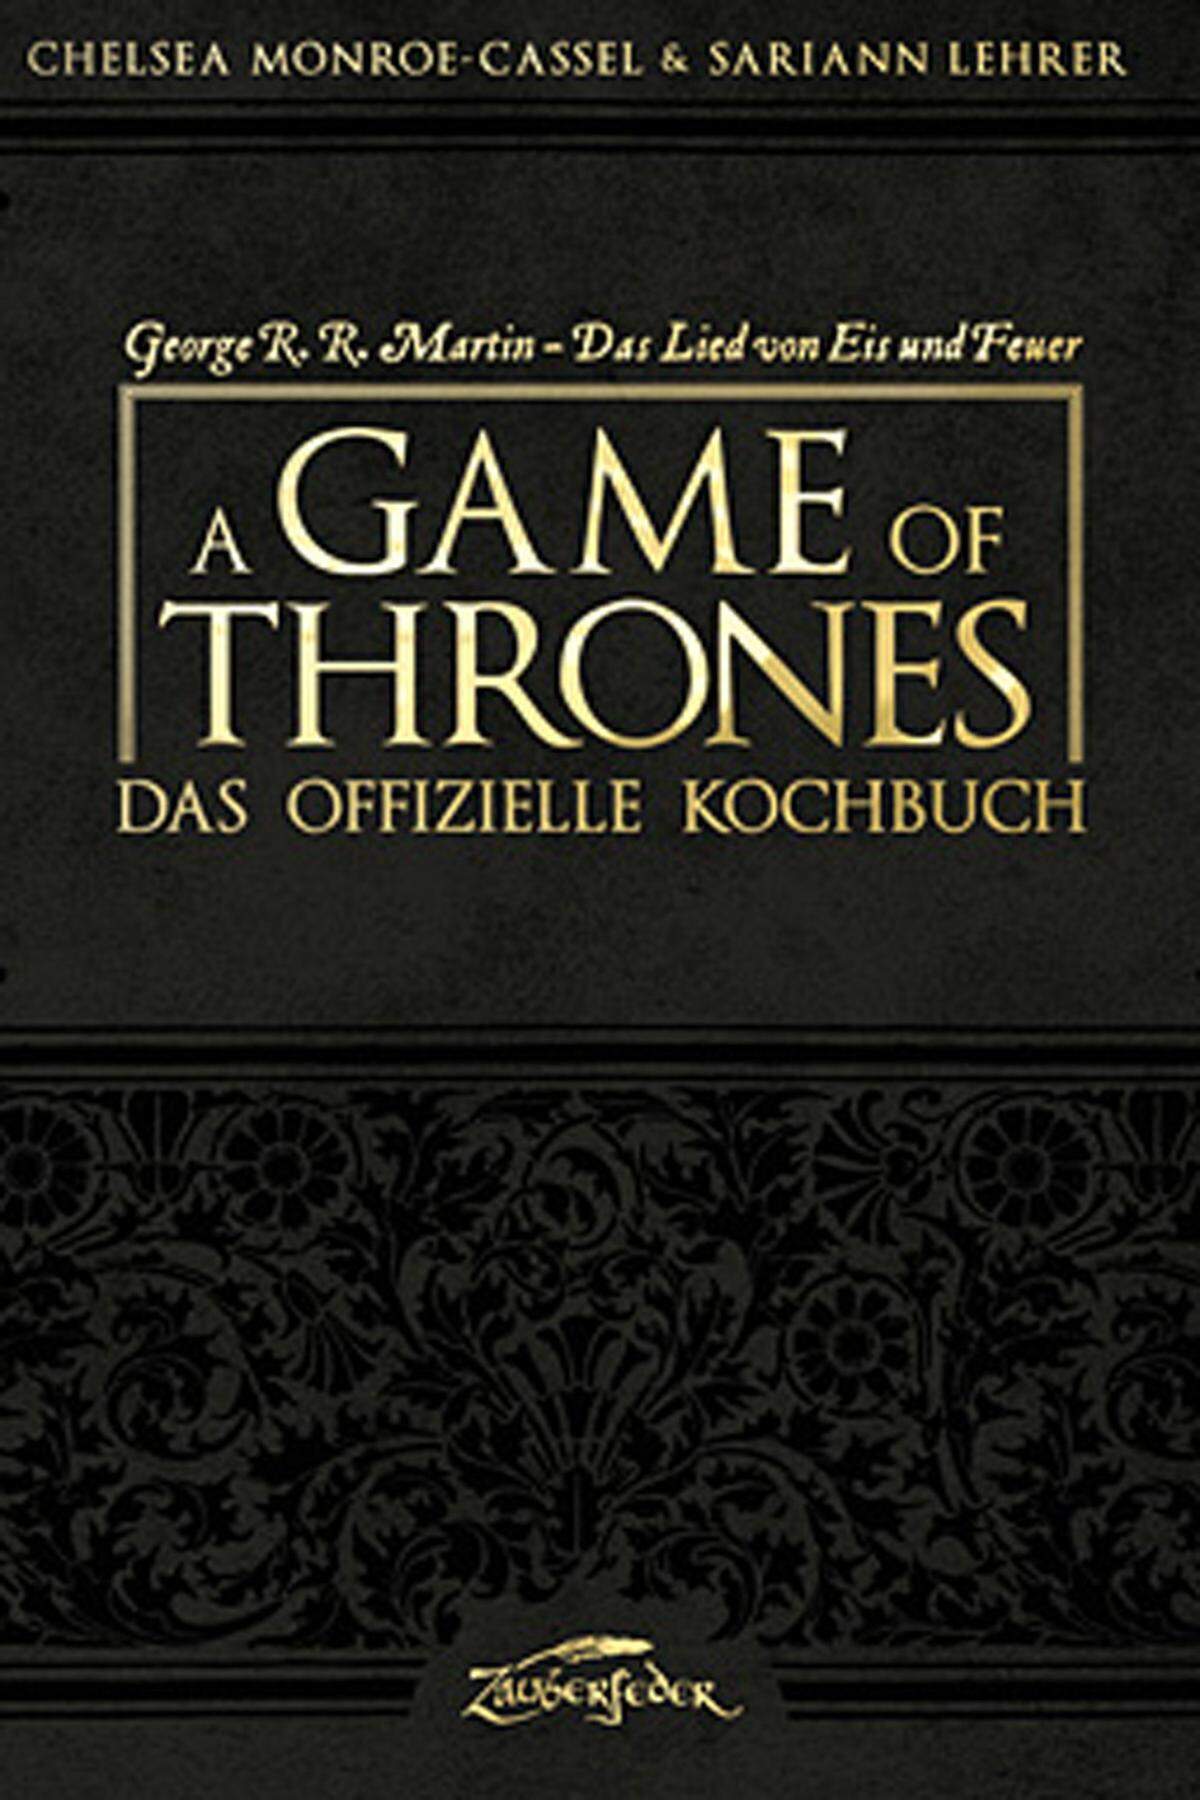 "A Game of Thrones – Das offizielle Kochbuch" von Chelsea Monroe-Cassel &amp; Sariann Lehrer erscheint ab 1. August 2013 im Zauberfeder Verlag. 224 Seiten, ISBN 978-3-938922-43-9, 24,90 Euro.